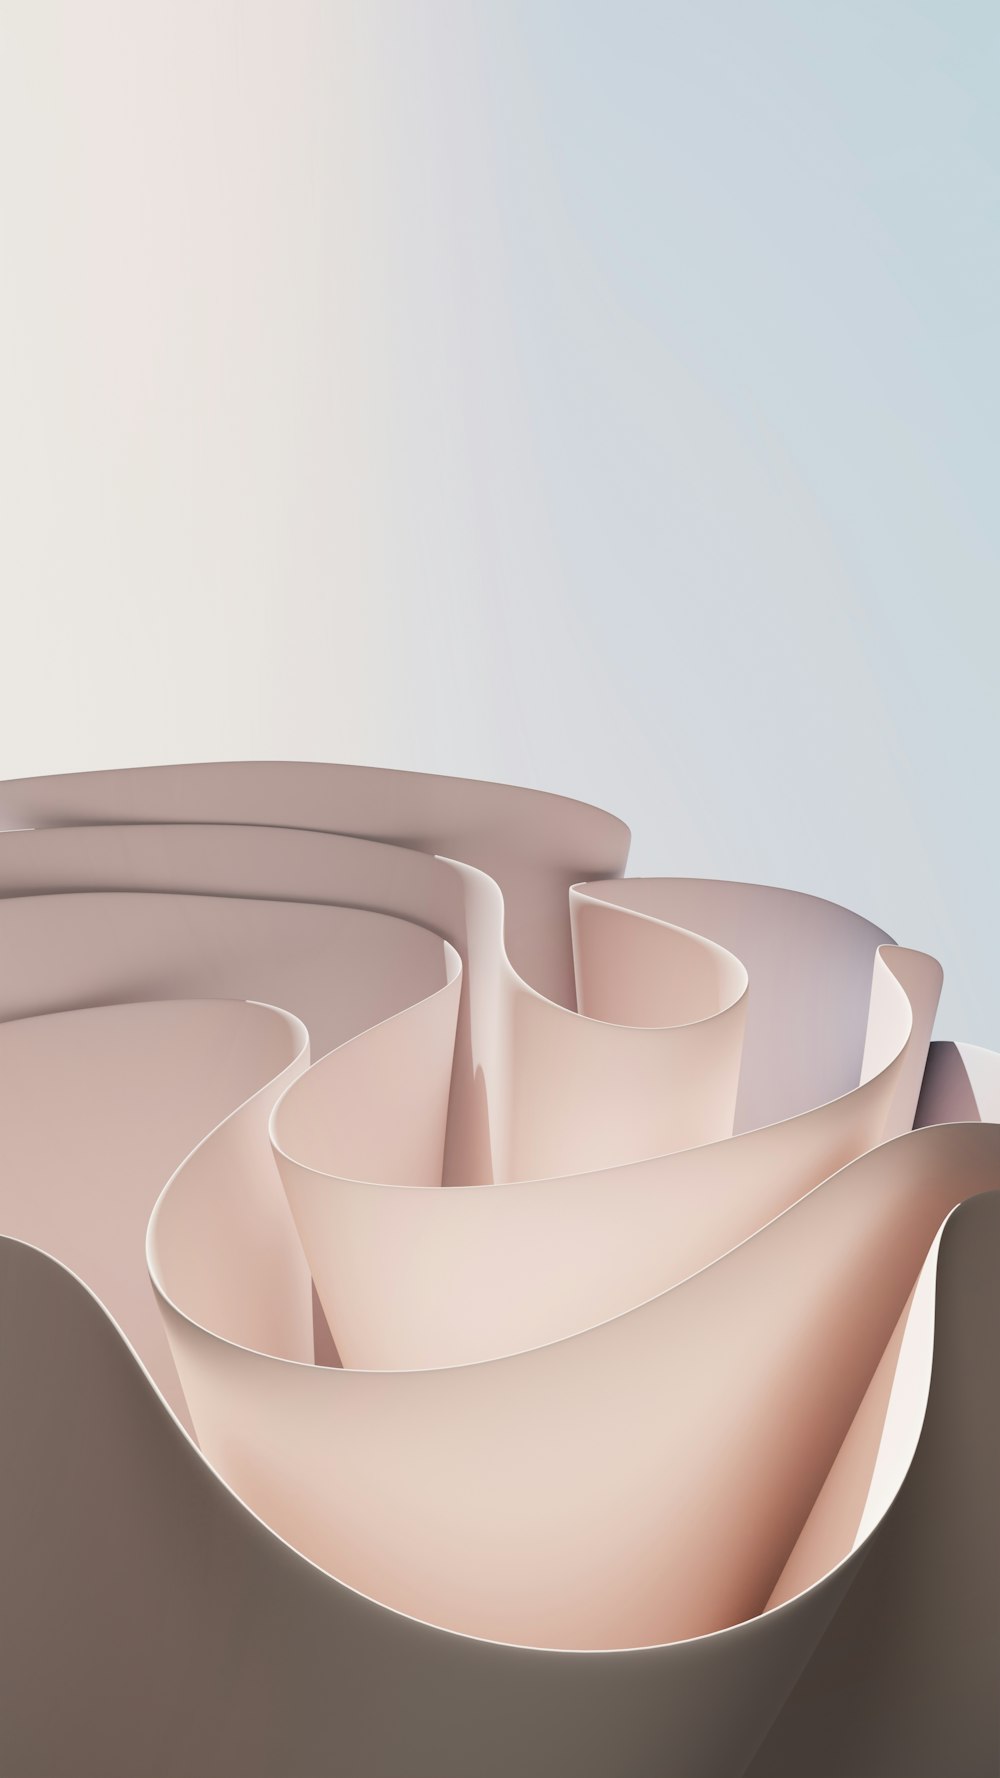 ein computergeneriertes Bild einer gekrümmten Oberfläche